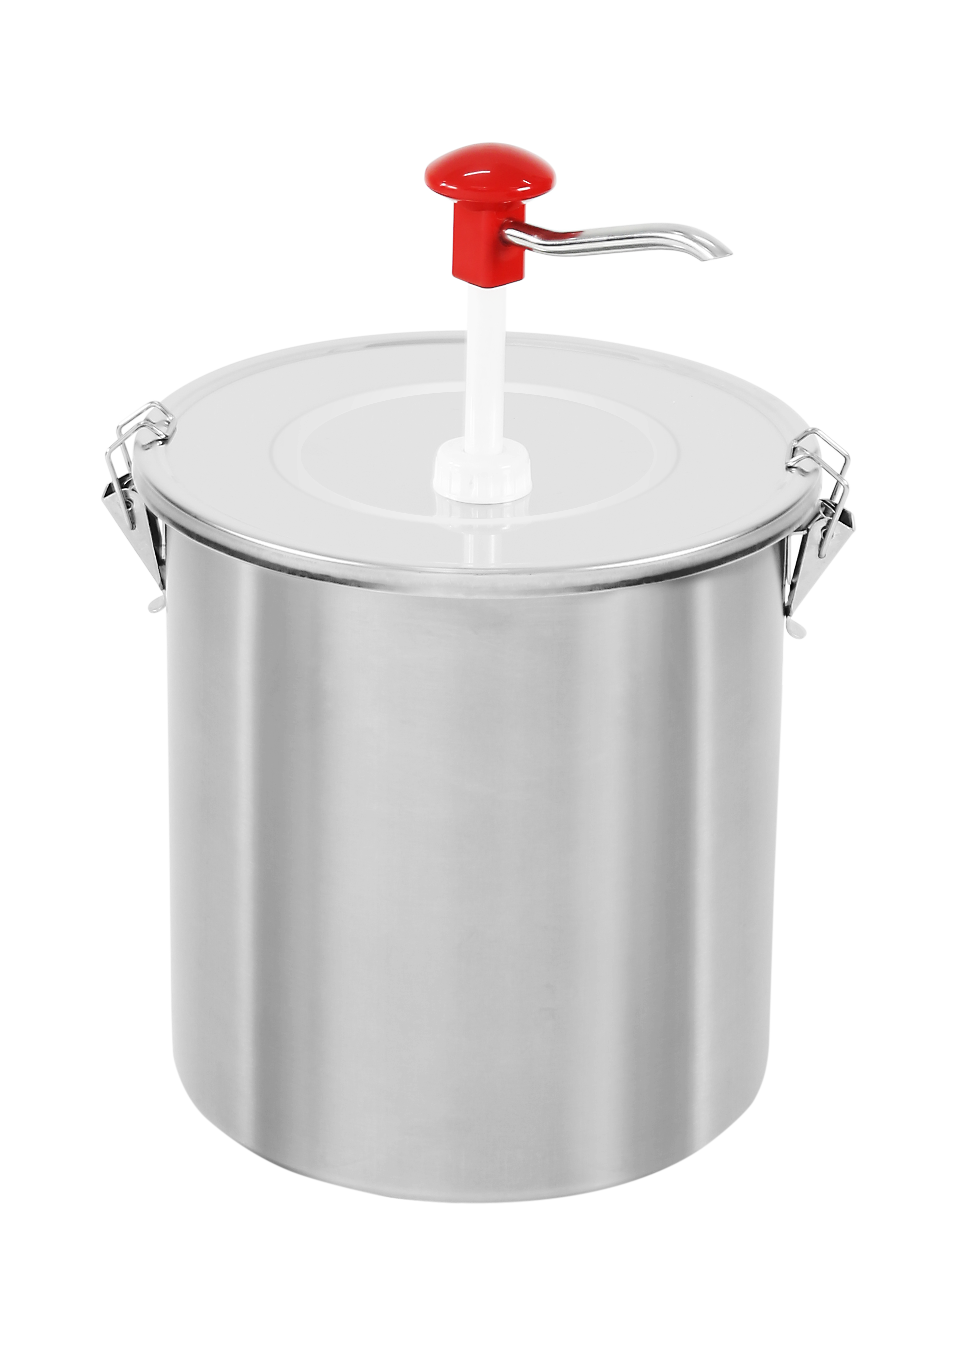 Eimerspender 10 Liter | Druckknopfsteuerung | Deckel und Behälter aus Edelstahl | 380(h)x265(Ø)mm